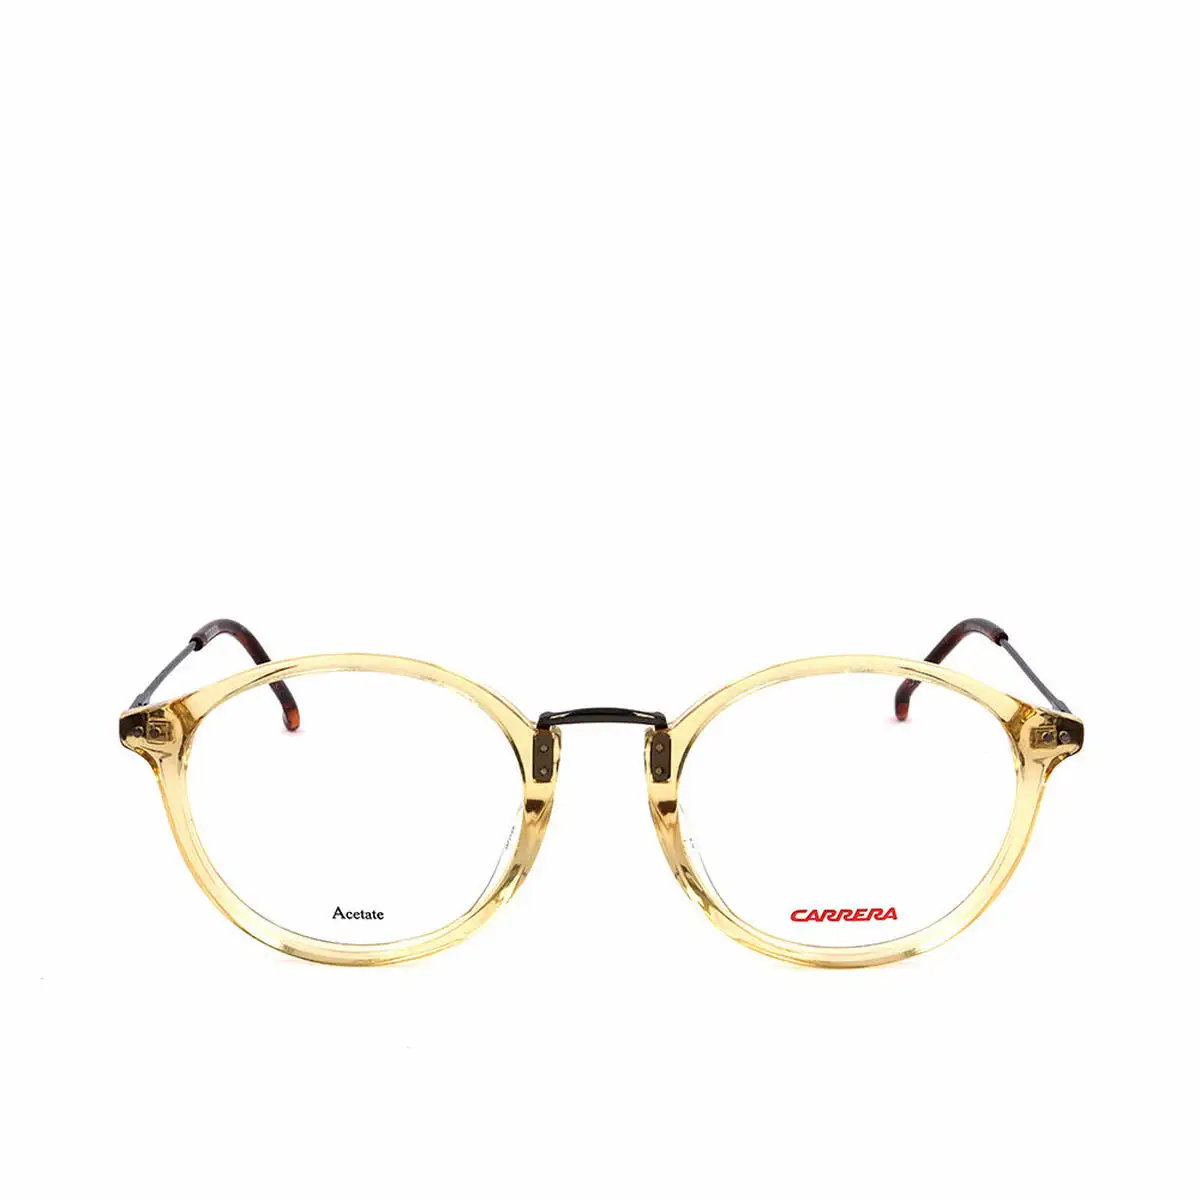 Monture de lunettes carrera 2013t o 48 mm_7455. DIAYTAR SENEGAL - Votre Destination Shopping de Choix. Explorez notre boutique en ligne et découvrez des trésors qui reflètent votre style et votre passion pour l'authenticité.